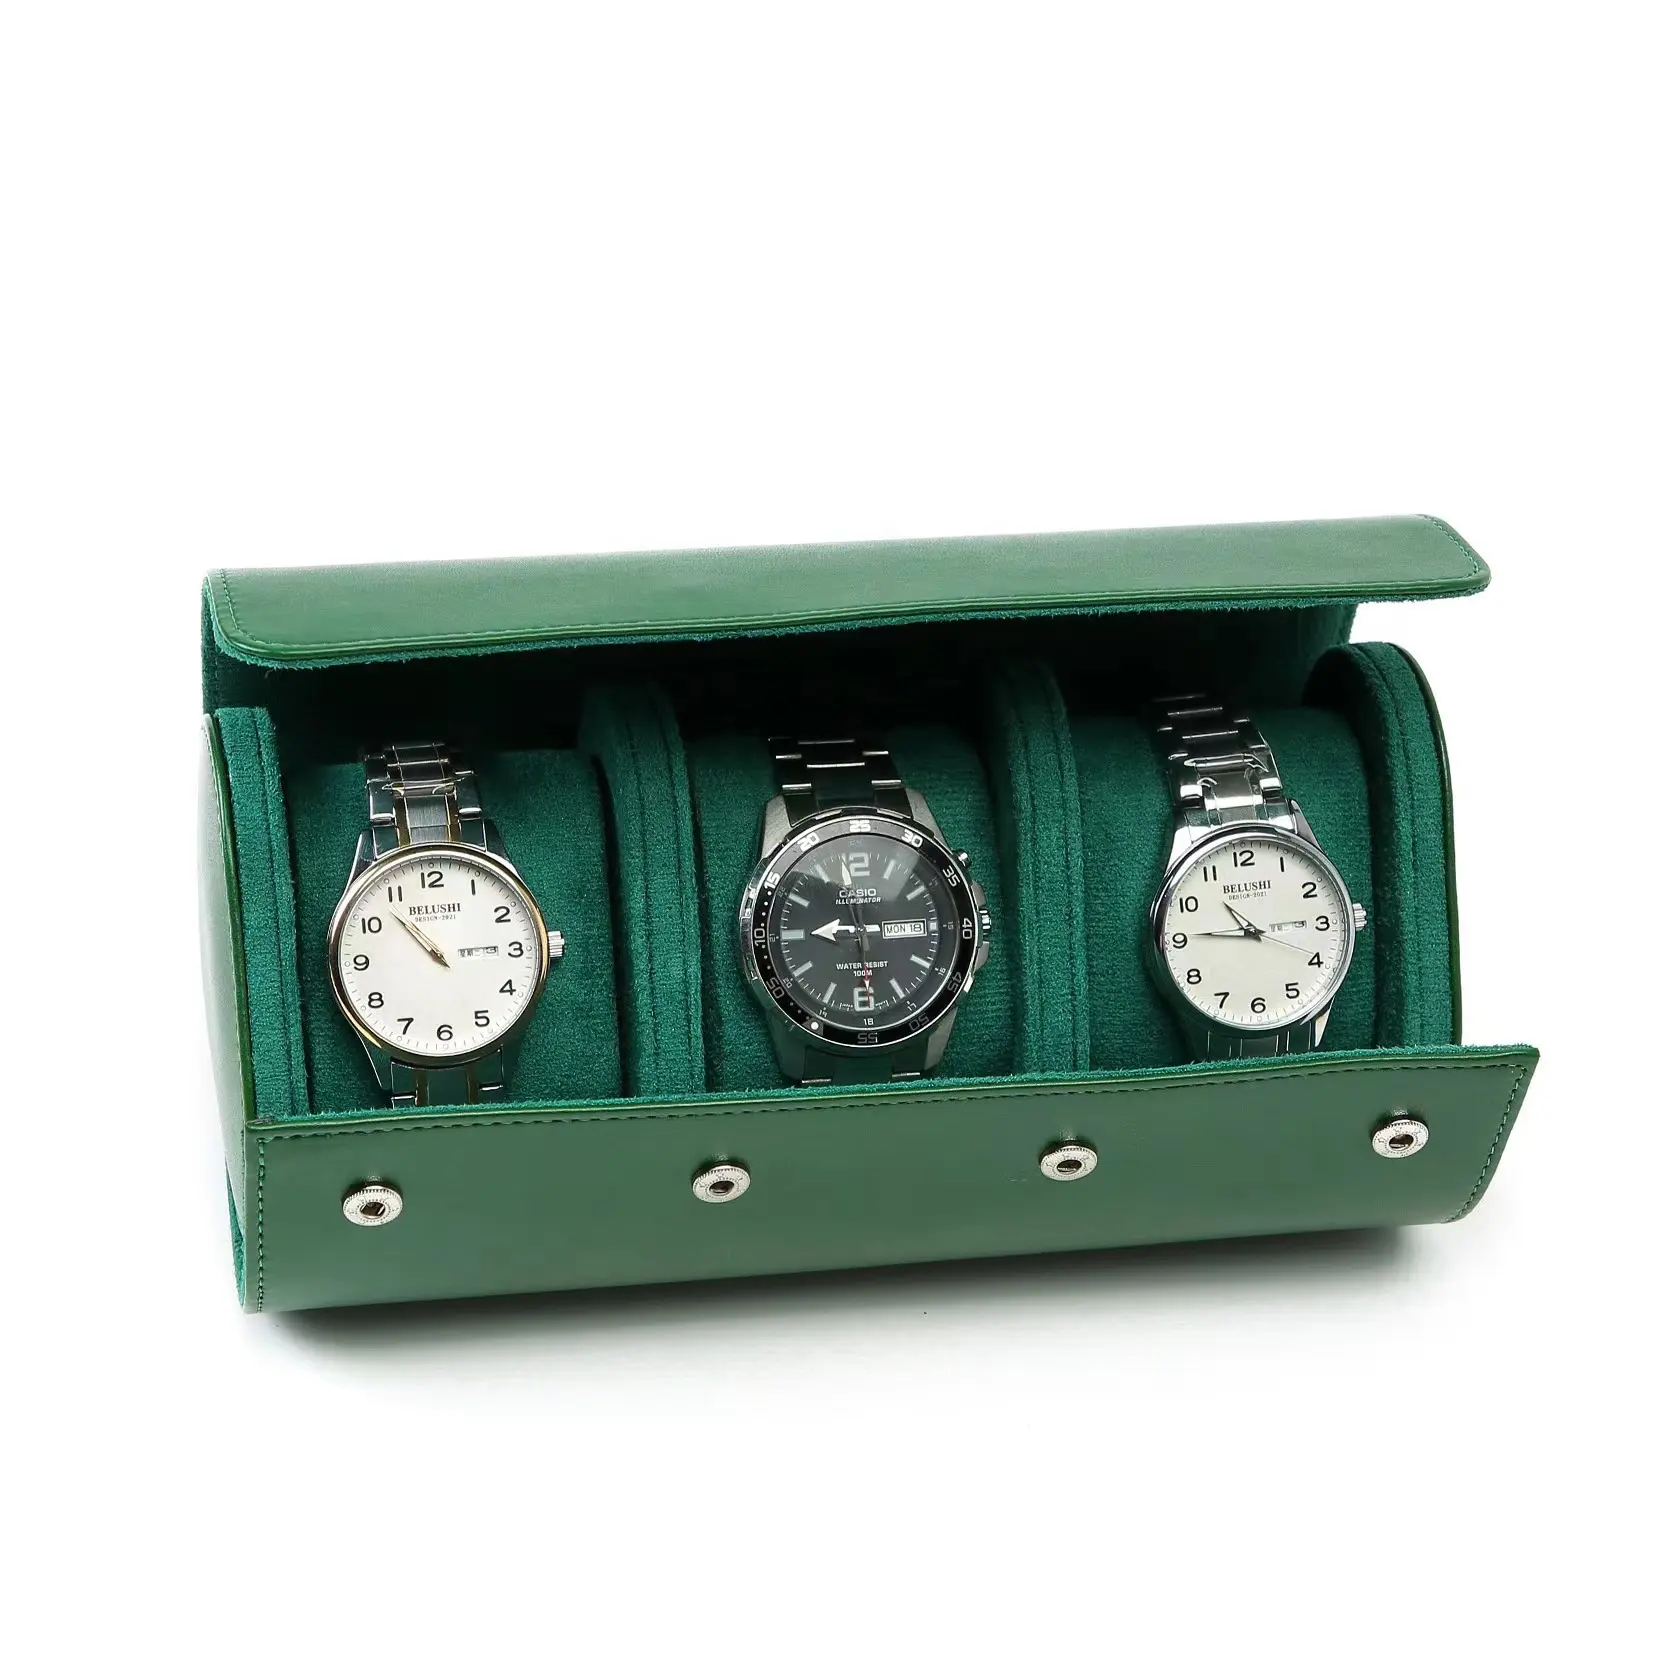 Caixa de couro PU para relógio High End com 1 2 3 ranhuras, caixa de armazenamento com botão e travesseiro com logotipo